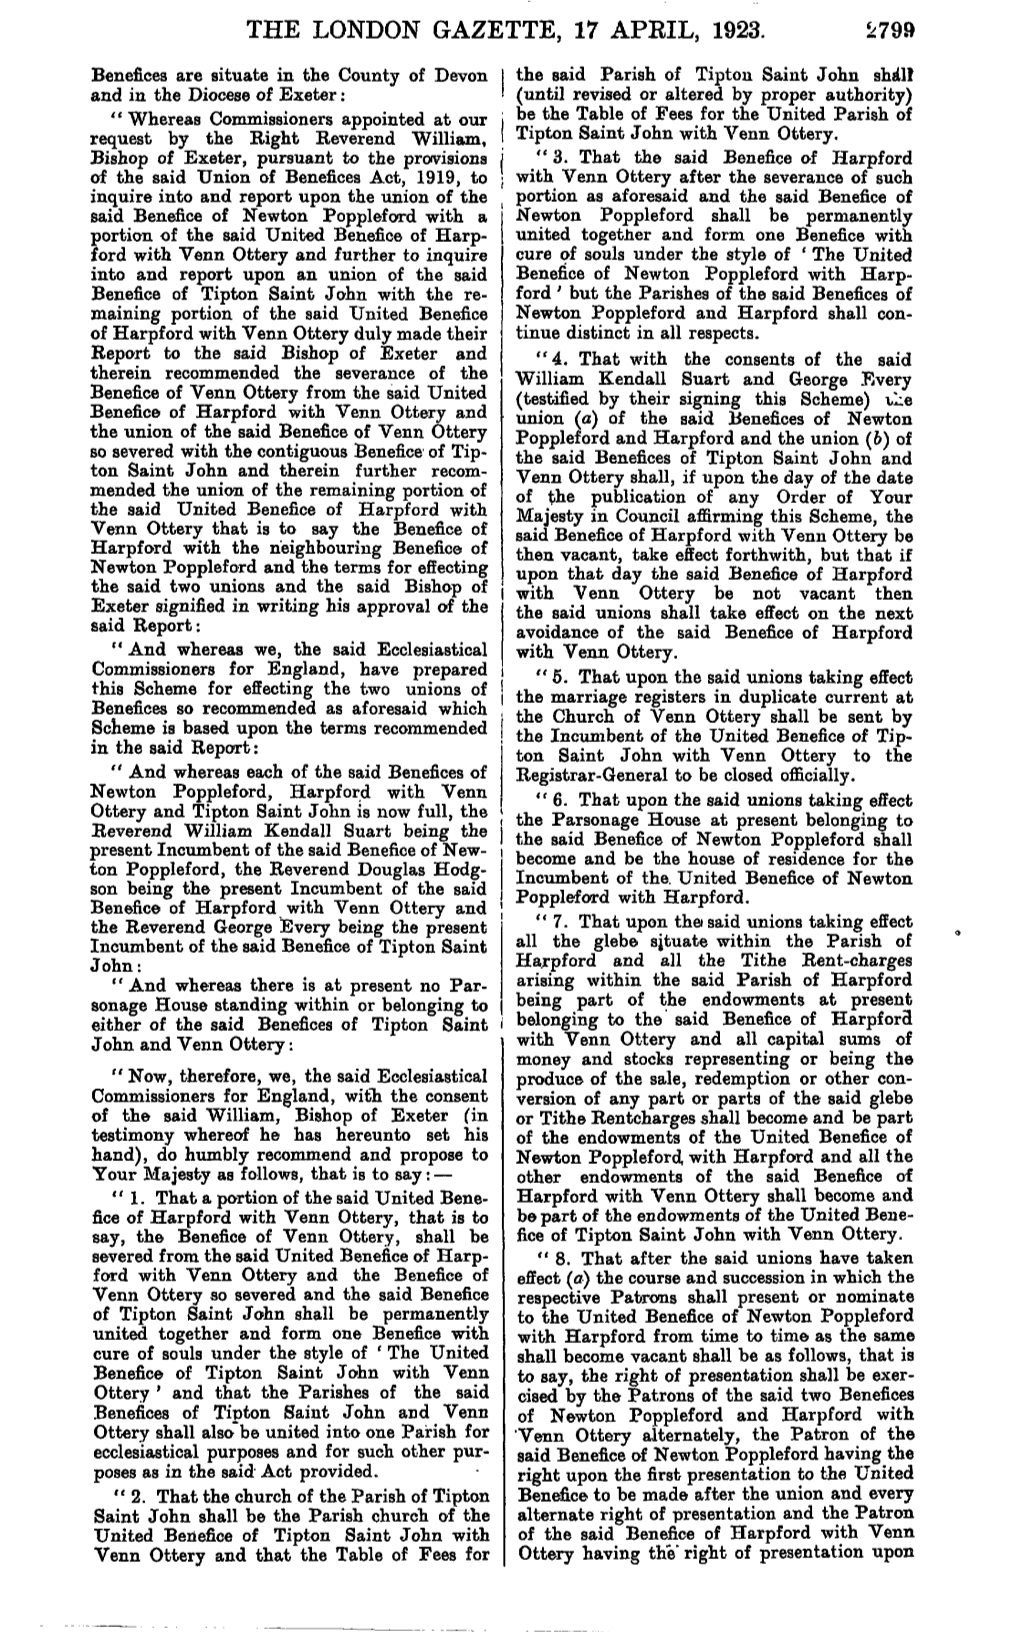 The London Gazette, 17 April, 1923